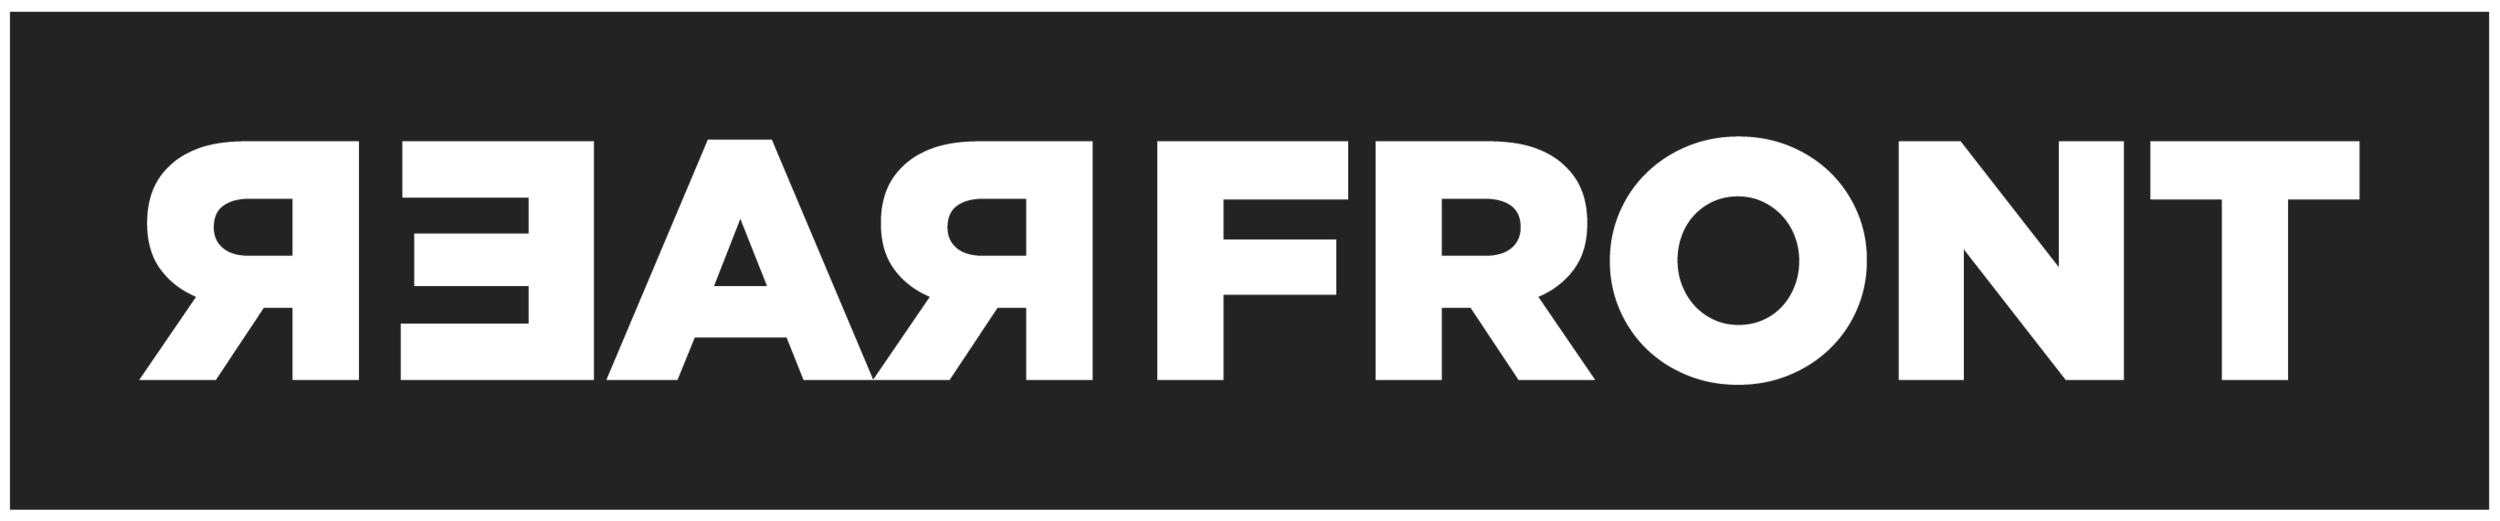 Rearfront-logo.png